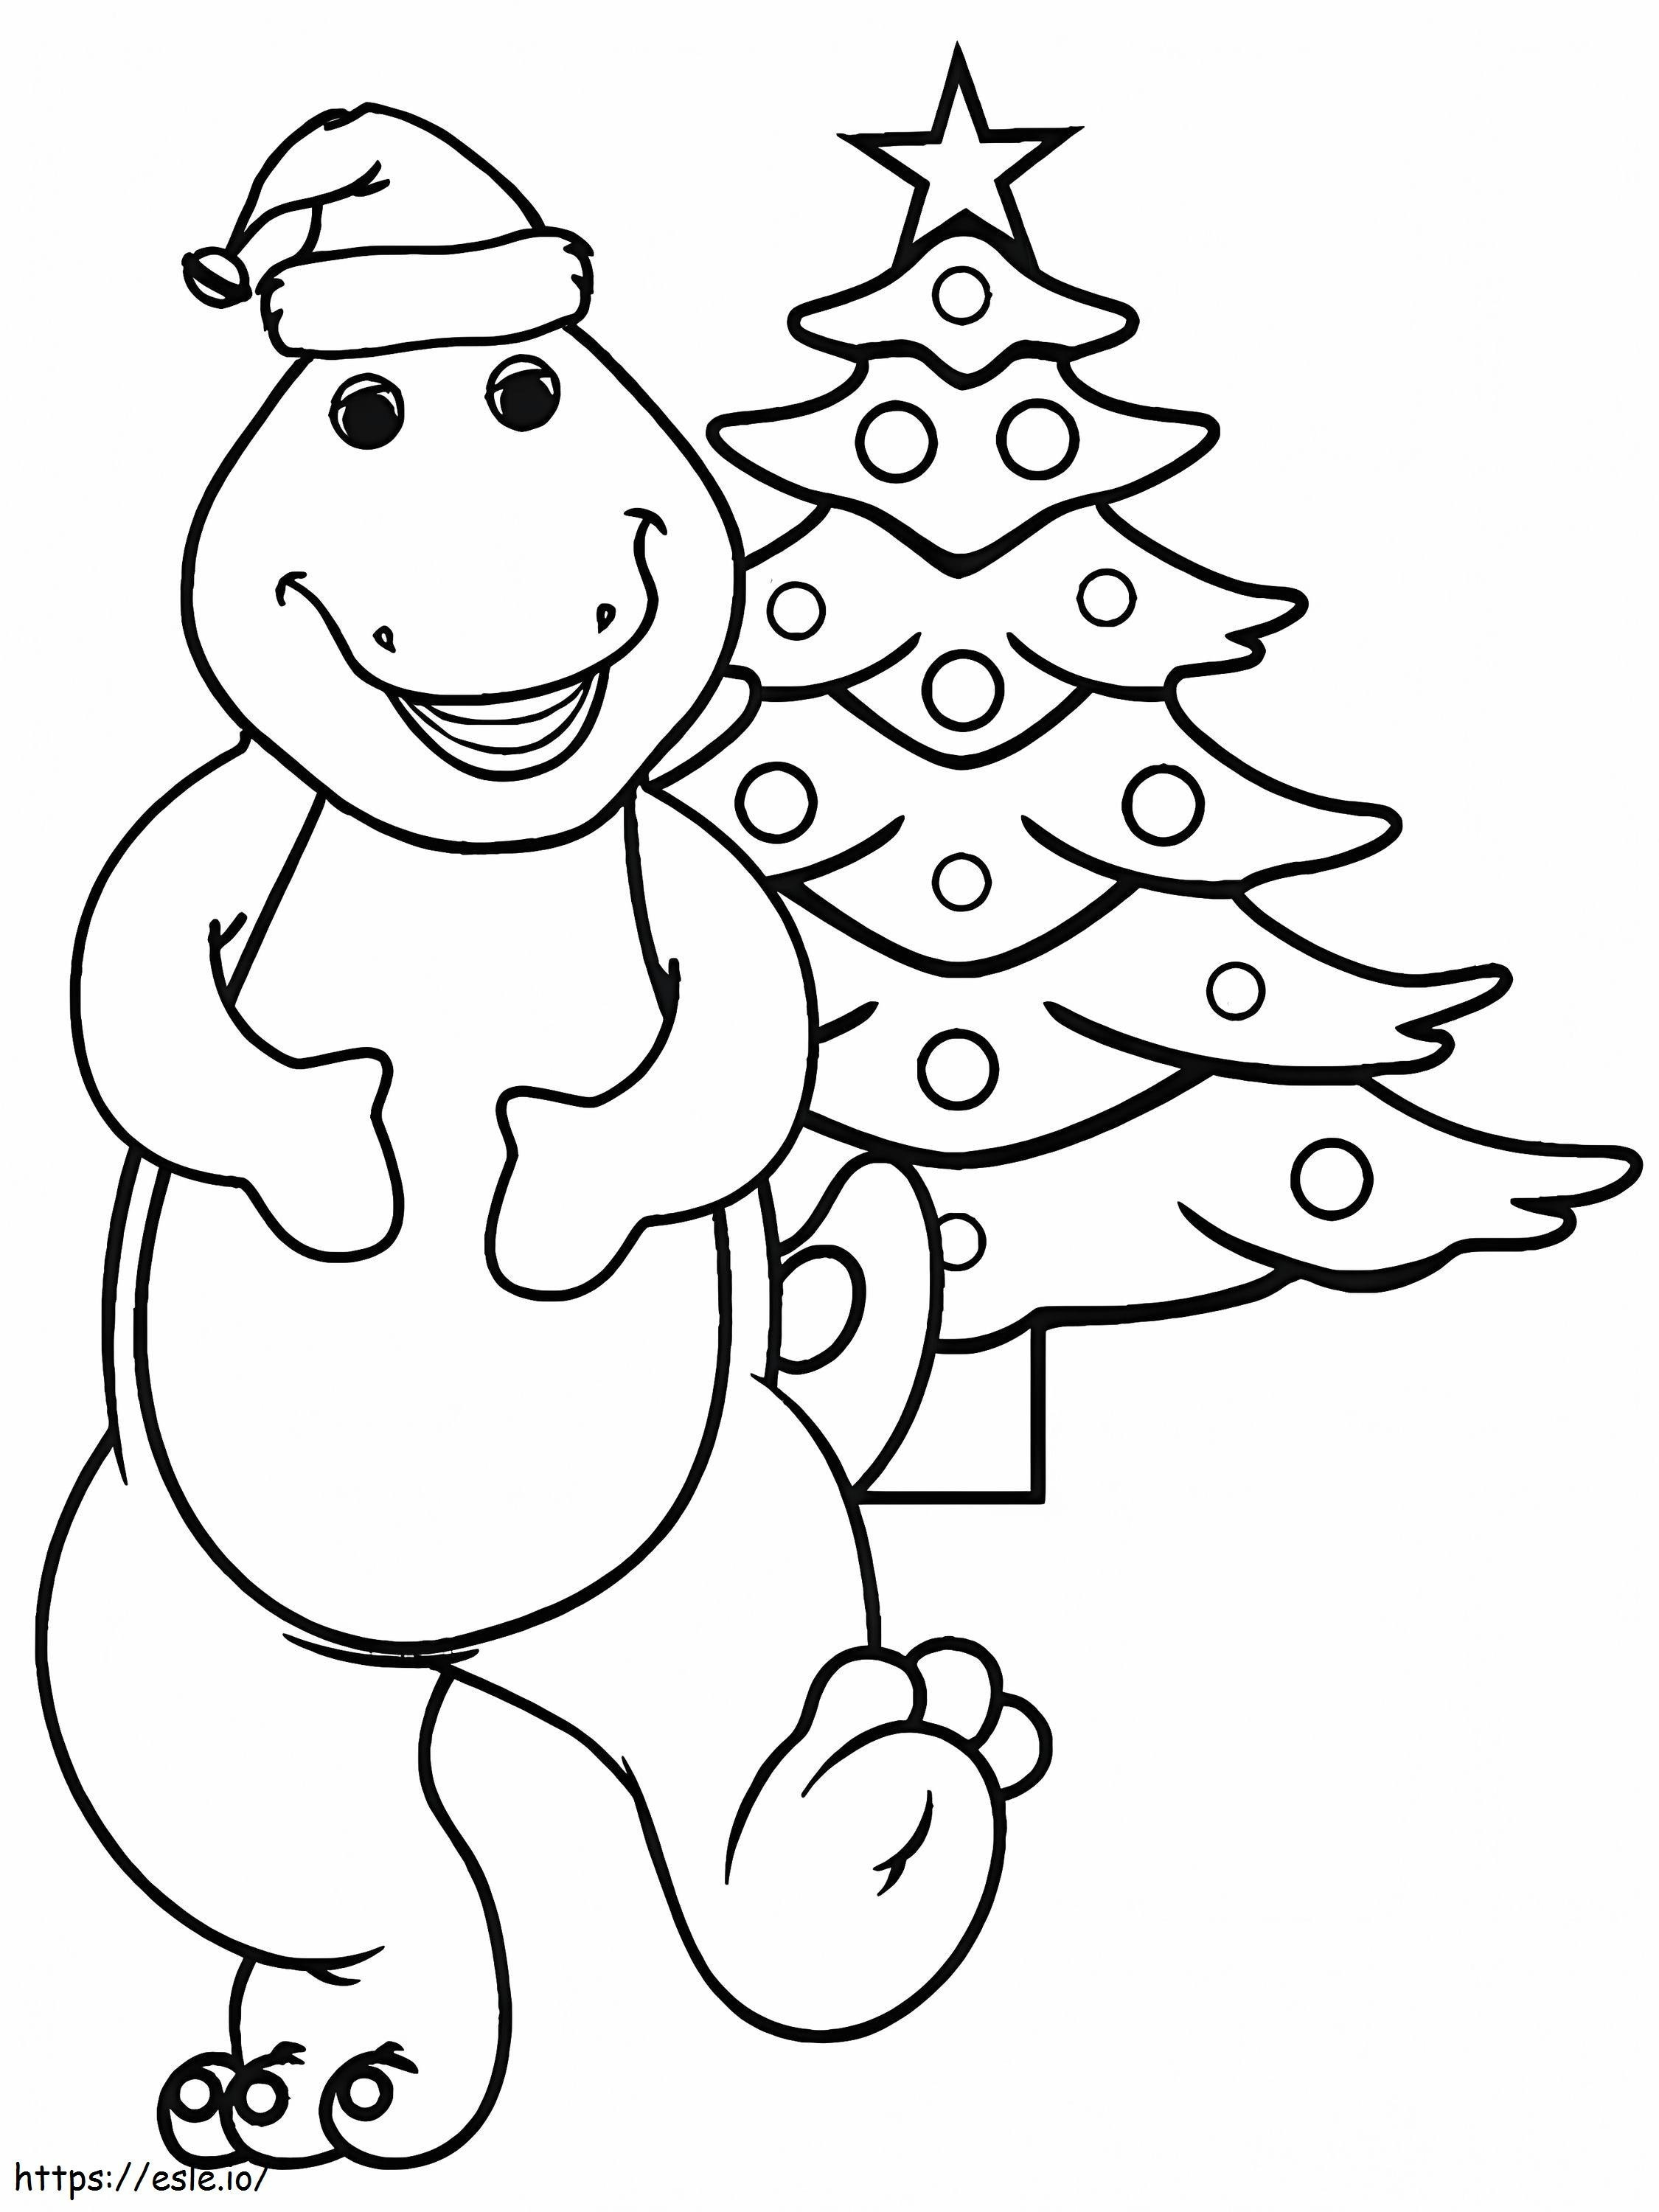 1541724741 Barney Christmas coloring page